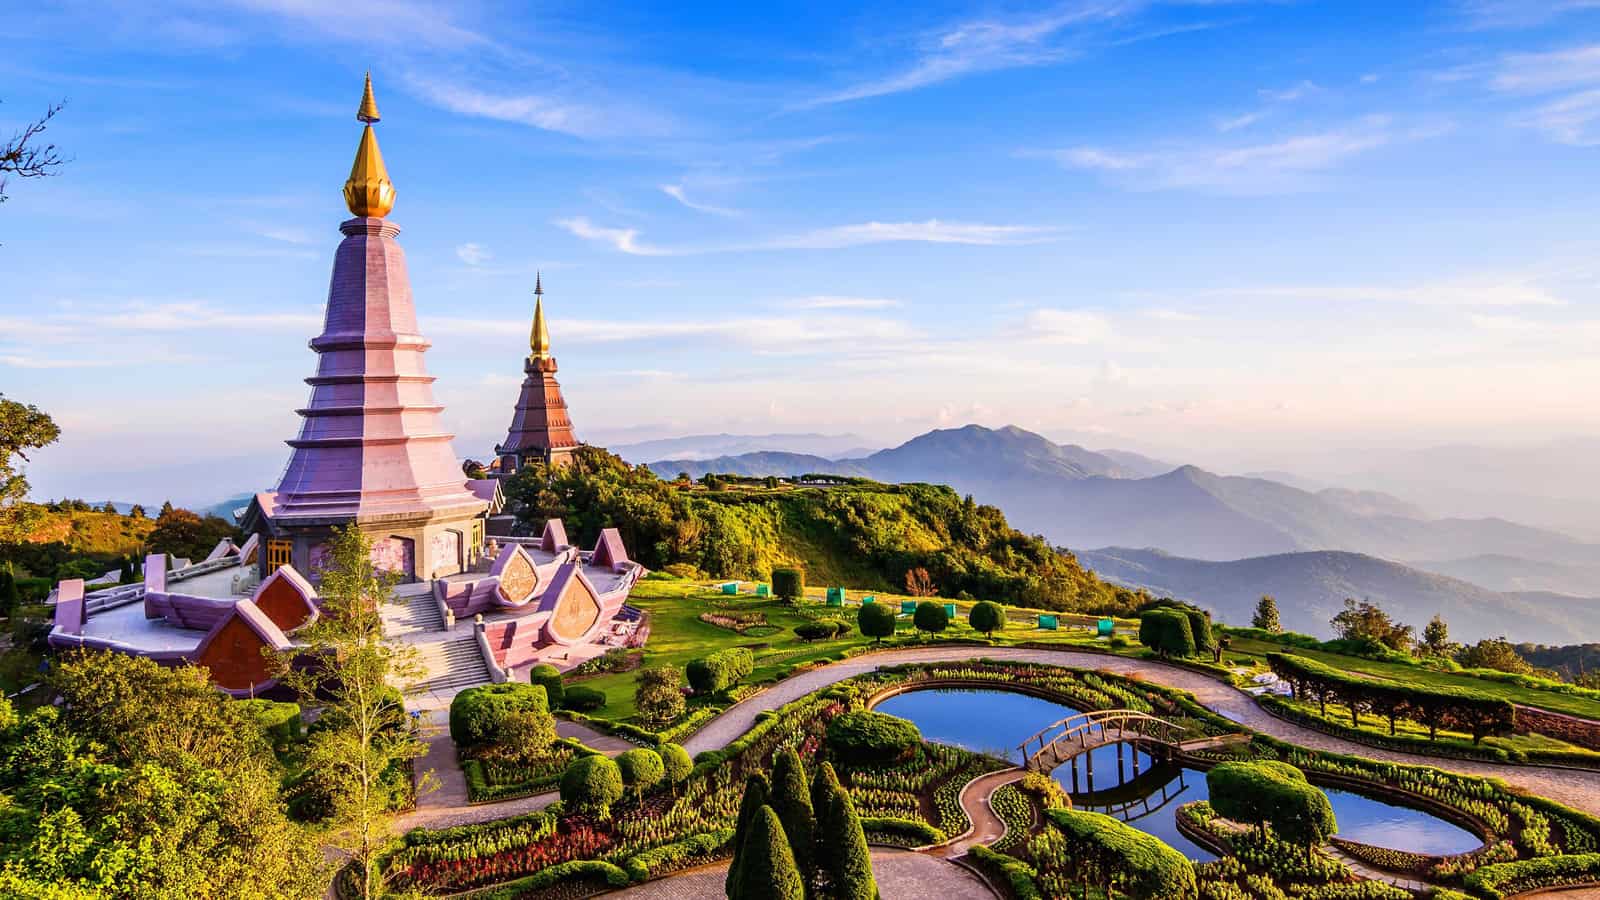 Chia sẽ kinh nghiệm thiết kế lịch trình tour du lịch tự túc với những địa điểm du lịch nổi bật trên bản đồ ở Chiang Mai